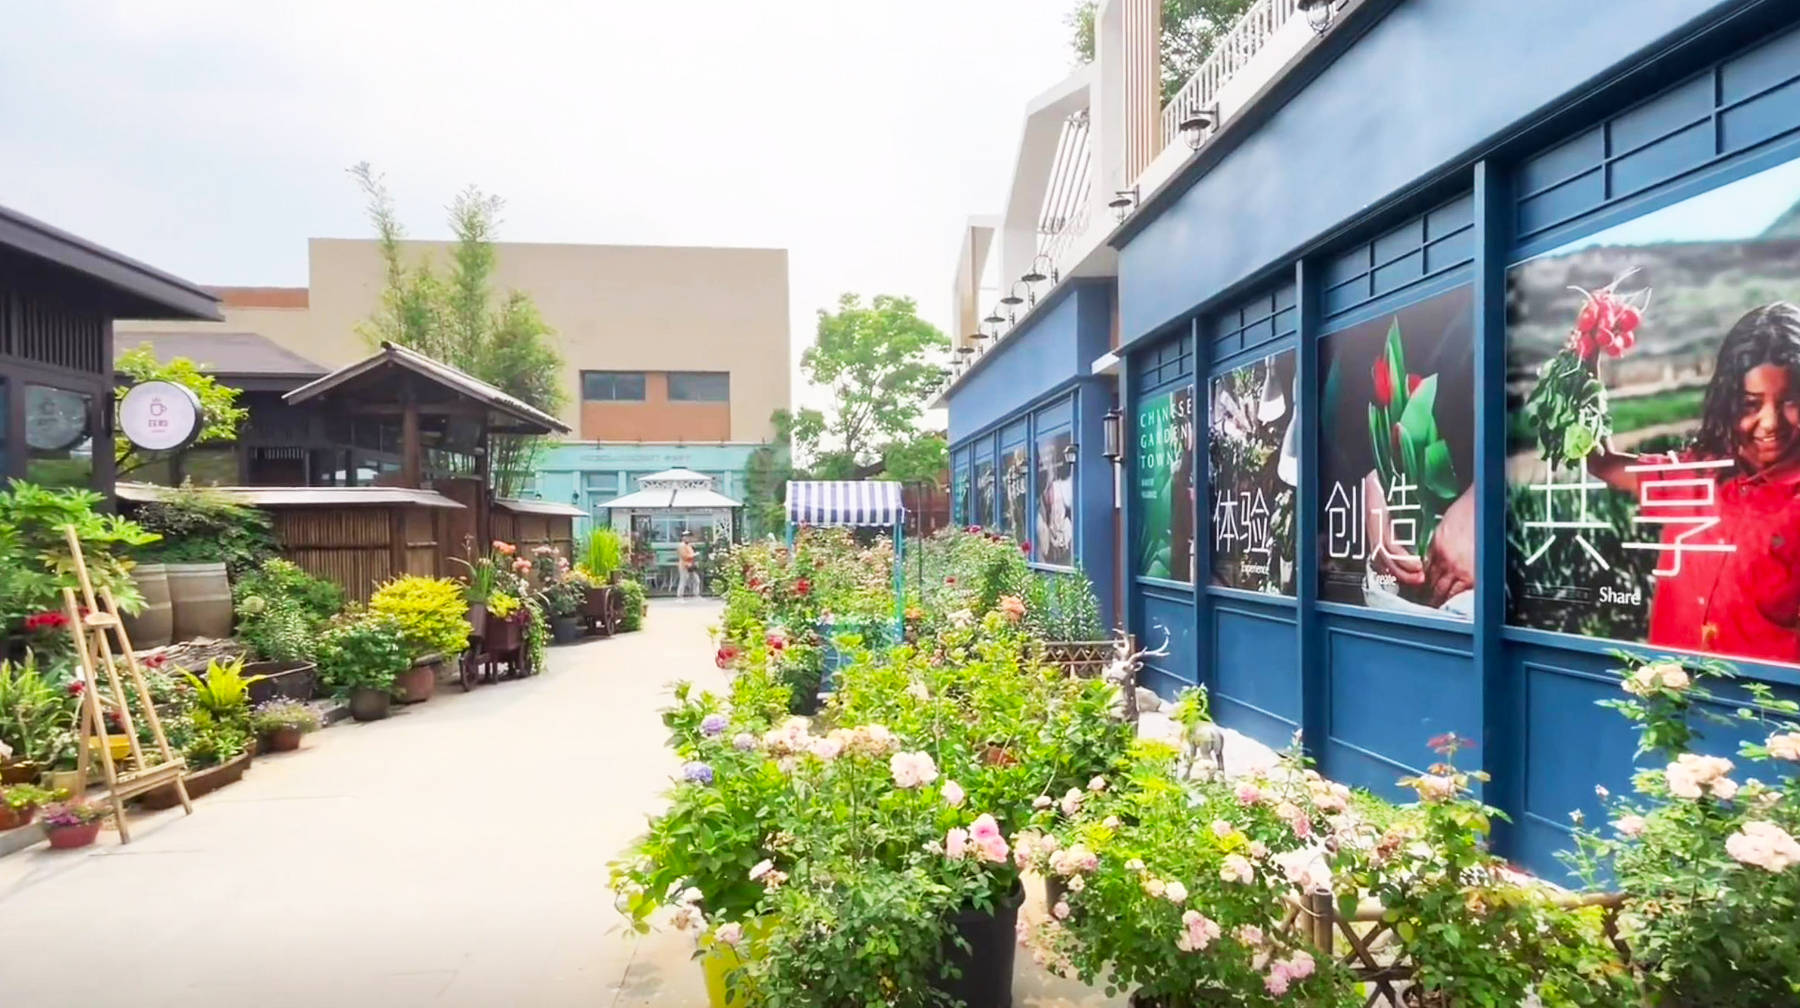 原创             打卡武汉郊区一座园艺小镇：遍布小清新风格街景，随手拍出大片感